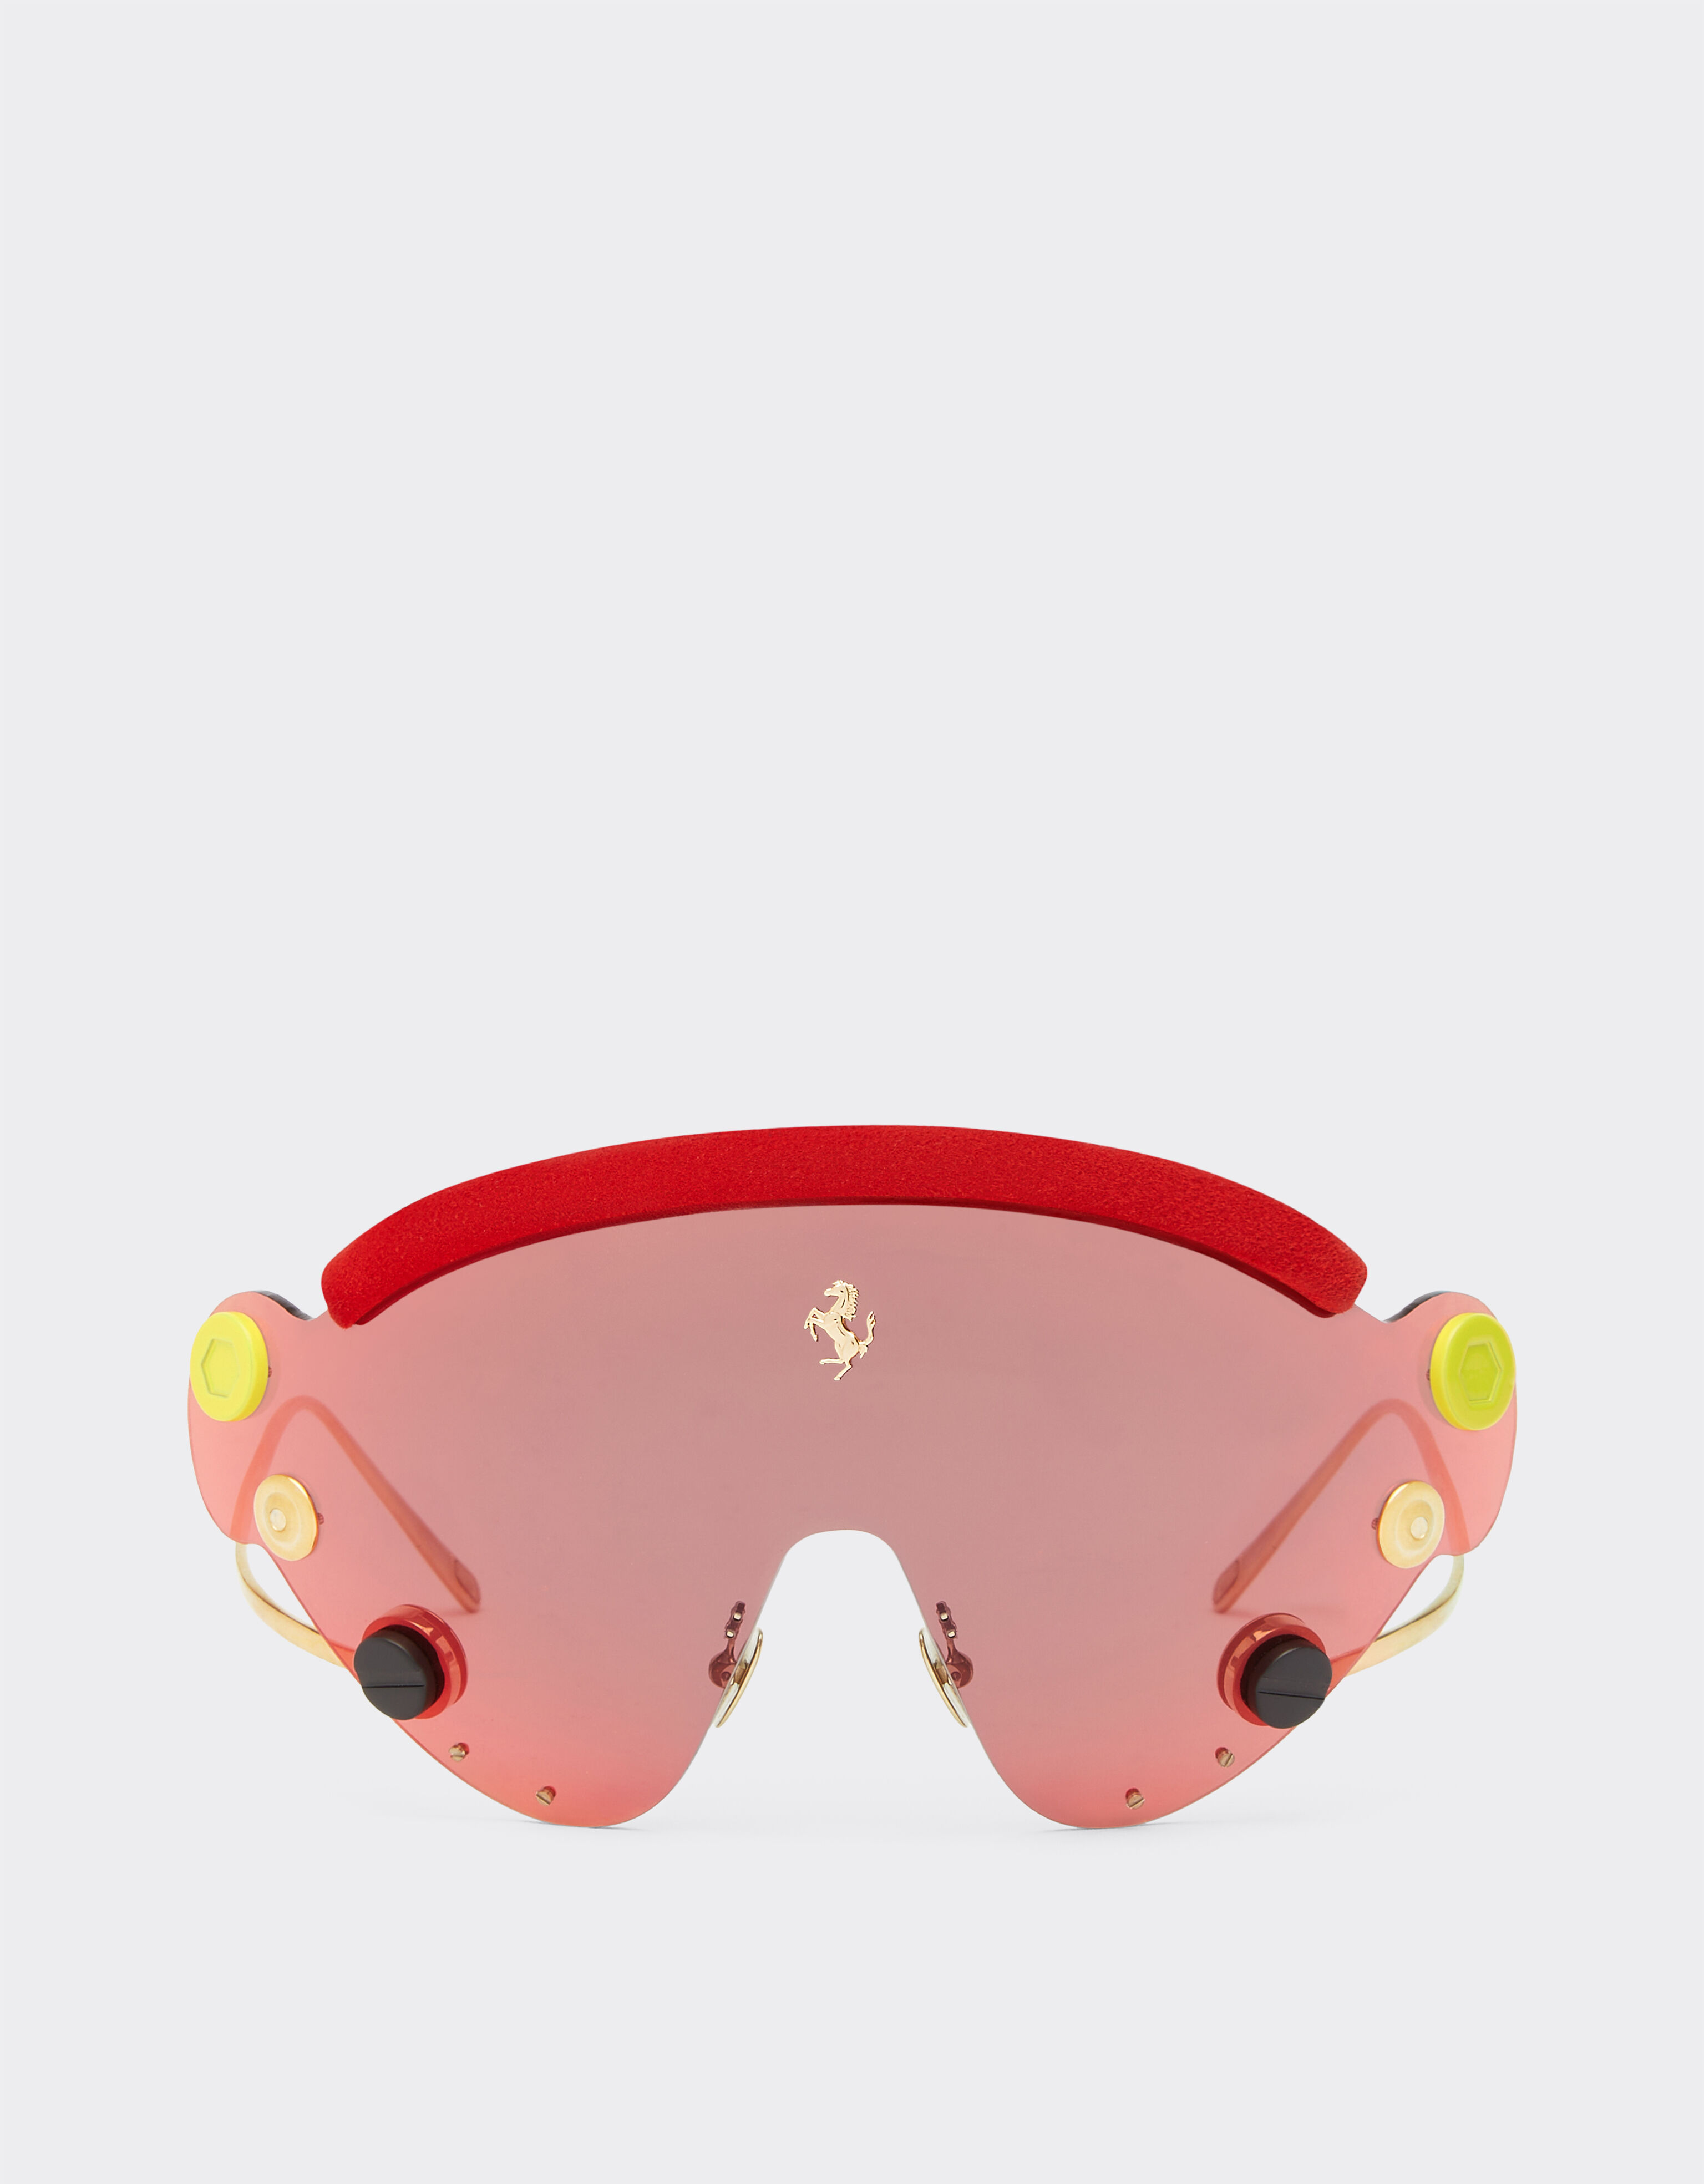 Ferrari Gafas de sol de Ferrari de edición limitada en metal rojo y dorado con pantalla de espejo roja Plata F1248f